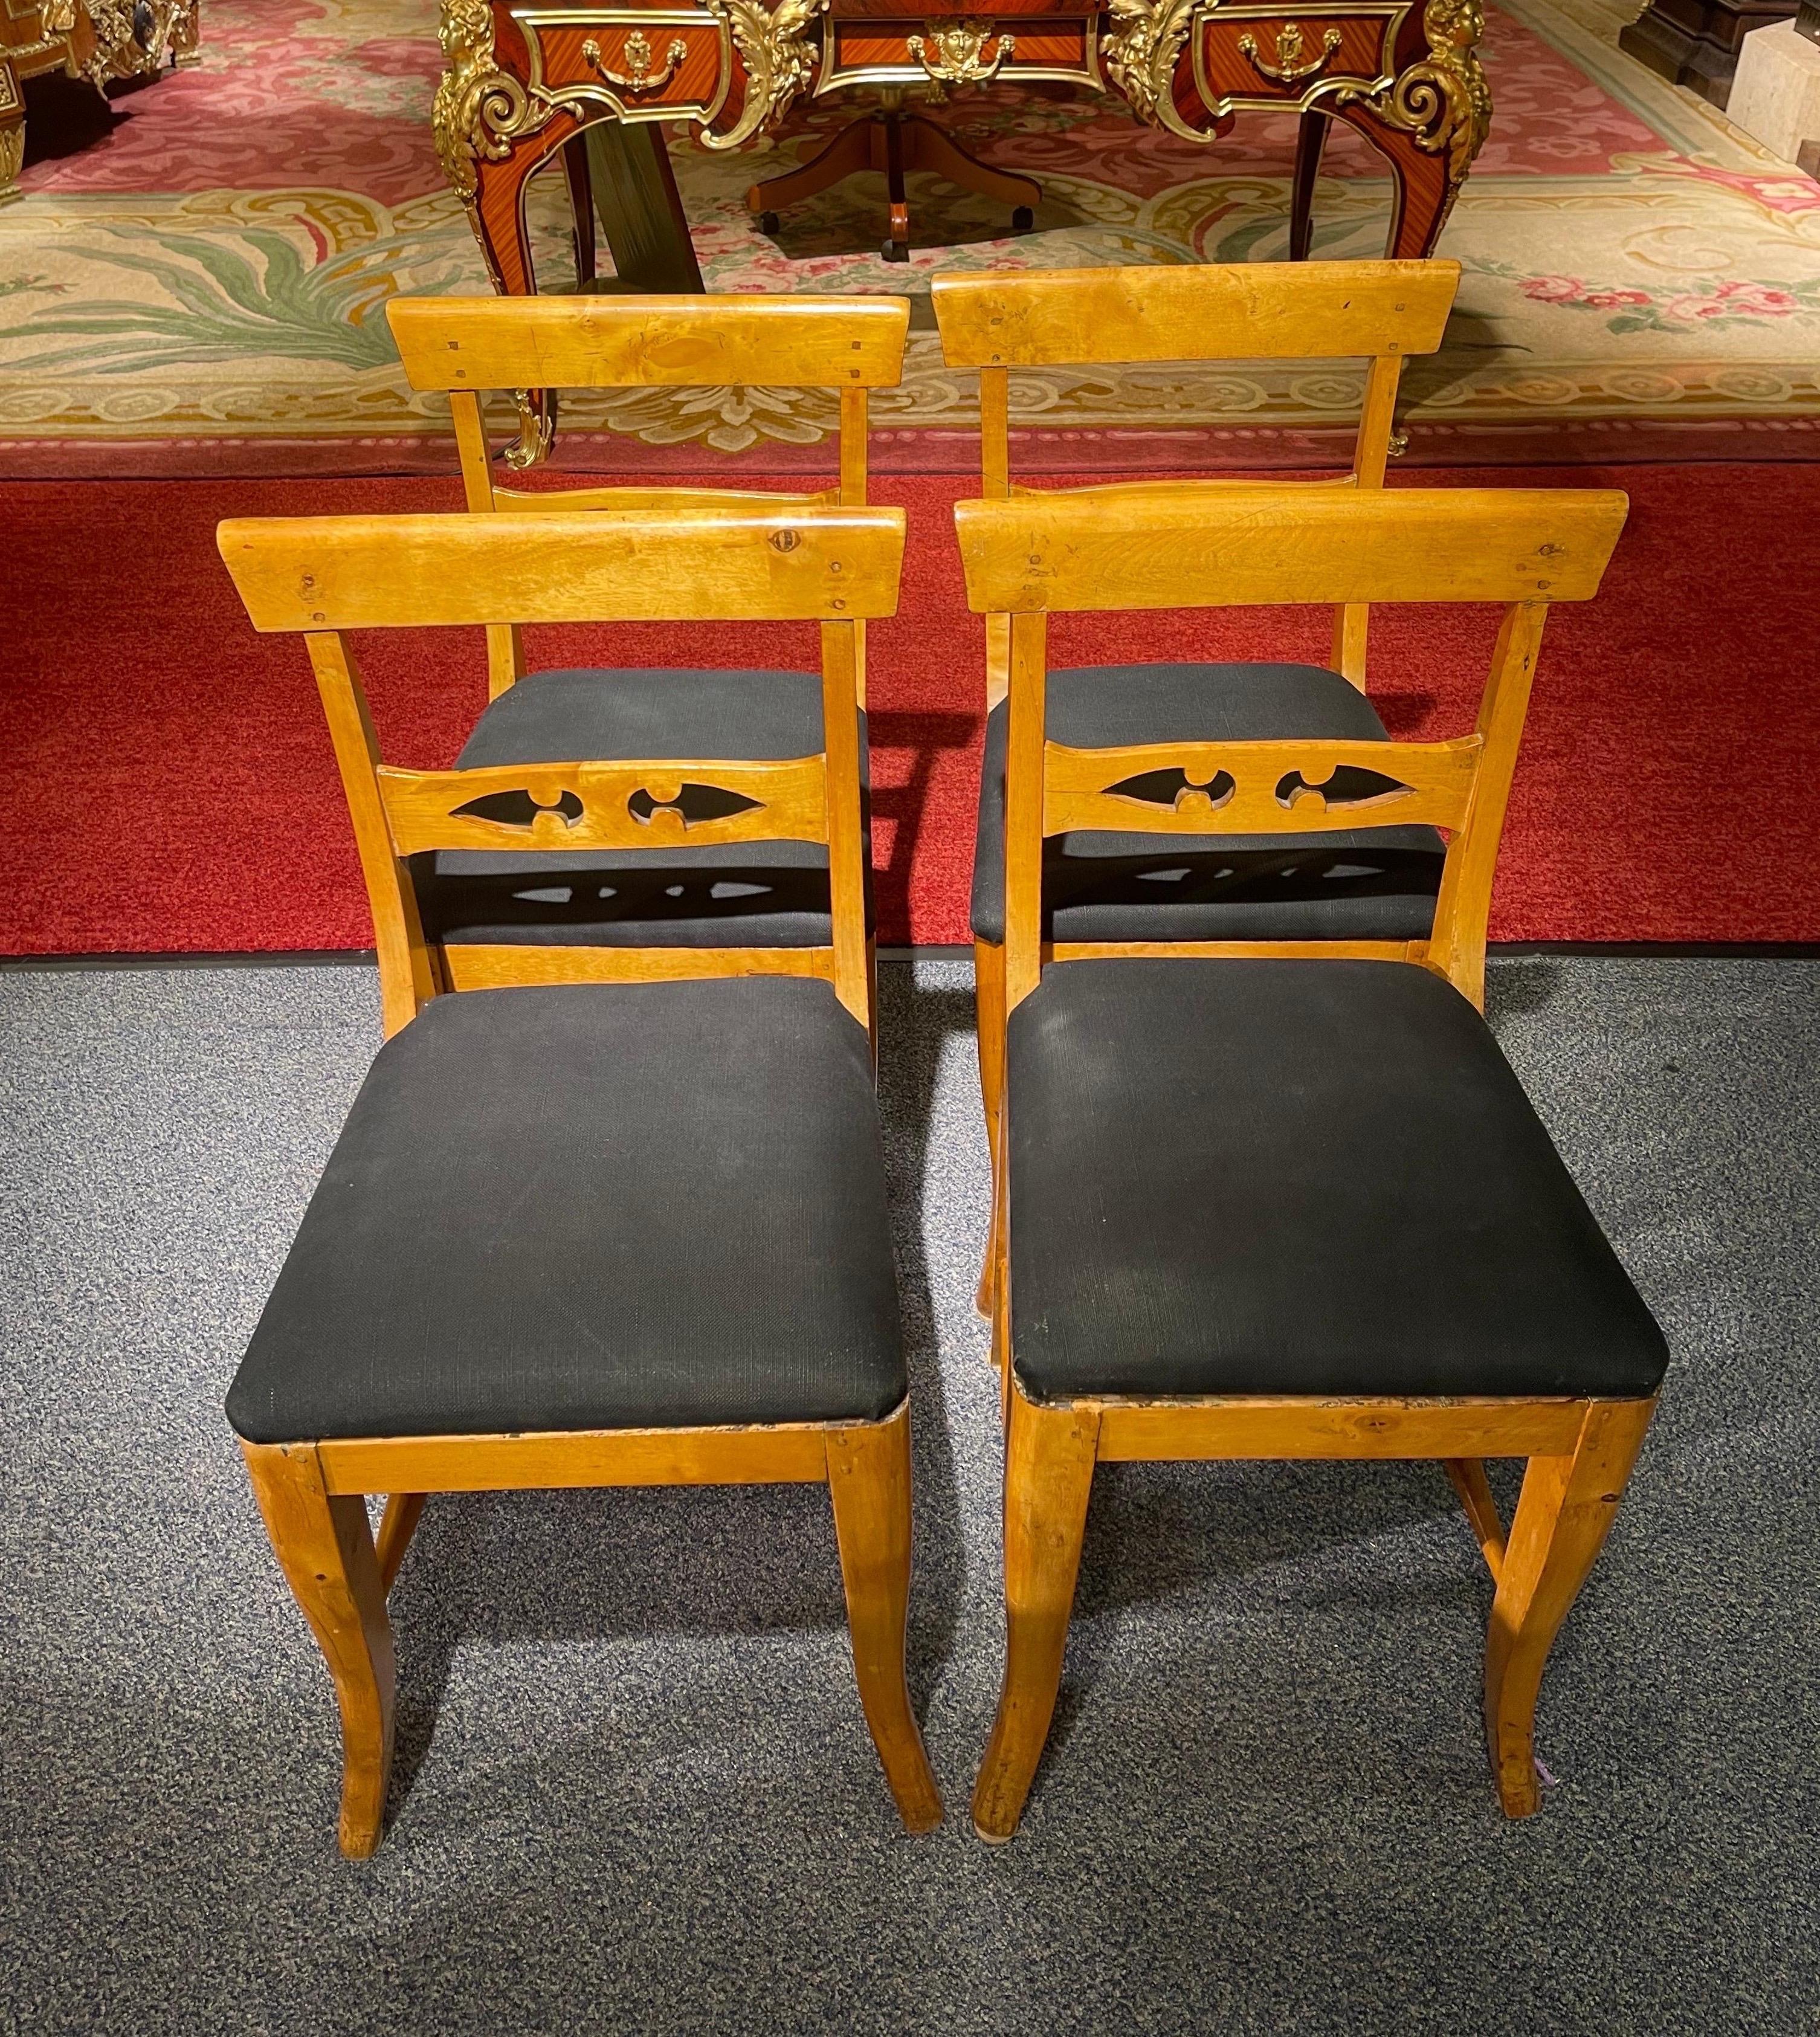 Schöner Satz von 4 Biedermeier-Stühlen aus der Zeit um 1860
Massivholz Birke. Sitz gepolstert und mit schwarzem Stoff bezogen.
Sehr stabil und robust gebaut